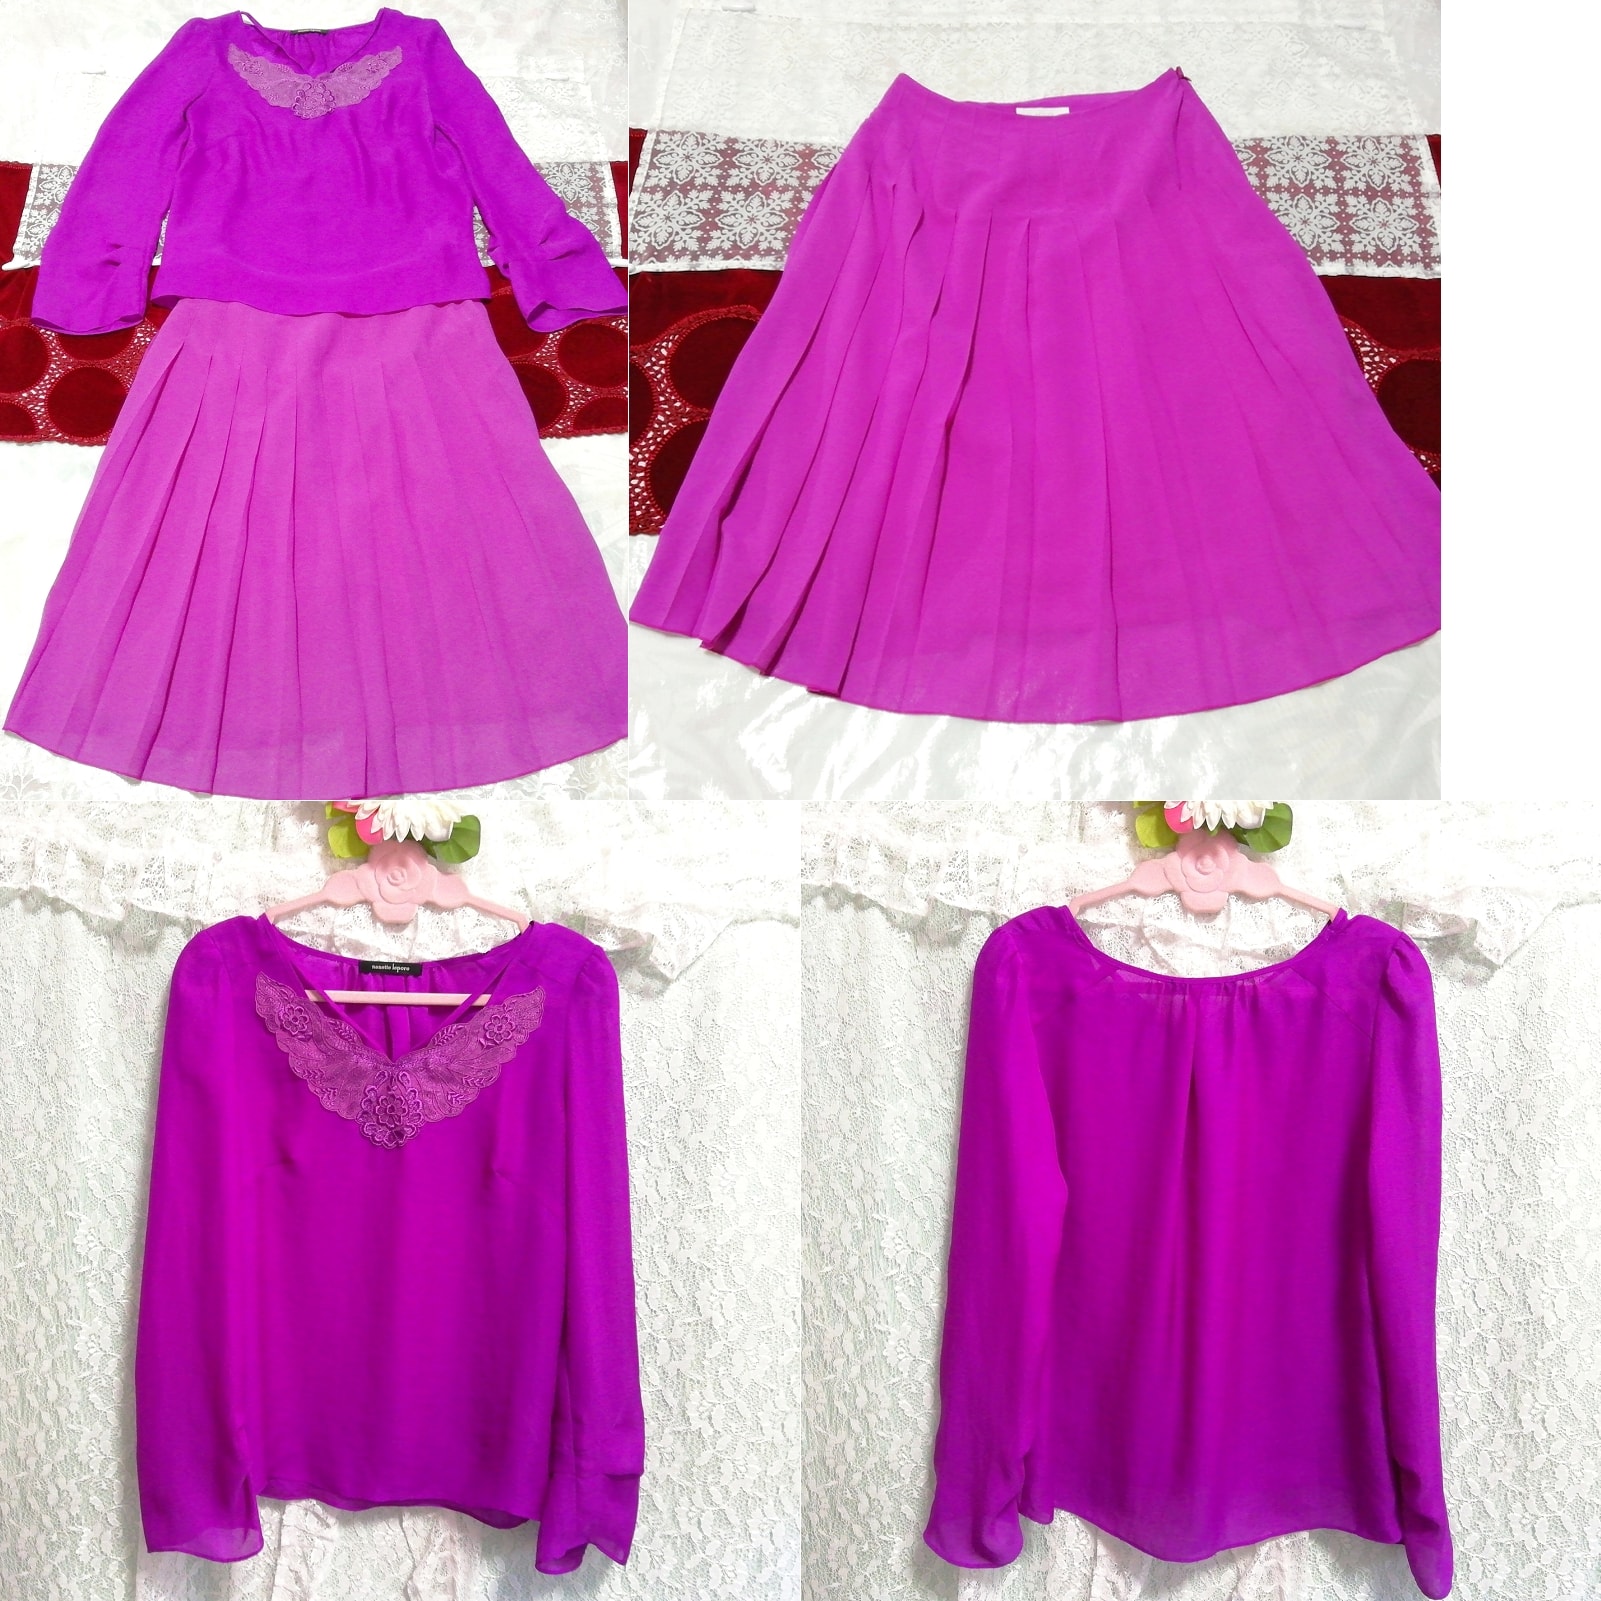 紫シフォンチュニック ネグリジェ ナイトウェア シフォンスカート 2P Purple chiffon tunic negligee nightwear chiffon skirt, ファッション, レディースファッション, ナイトウエア、パジャマ